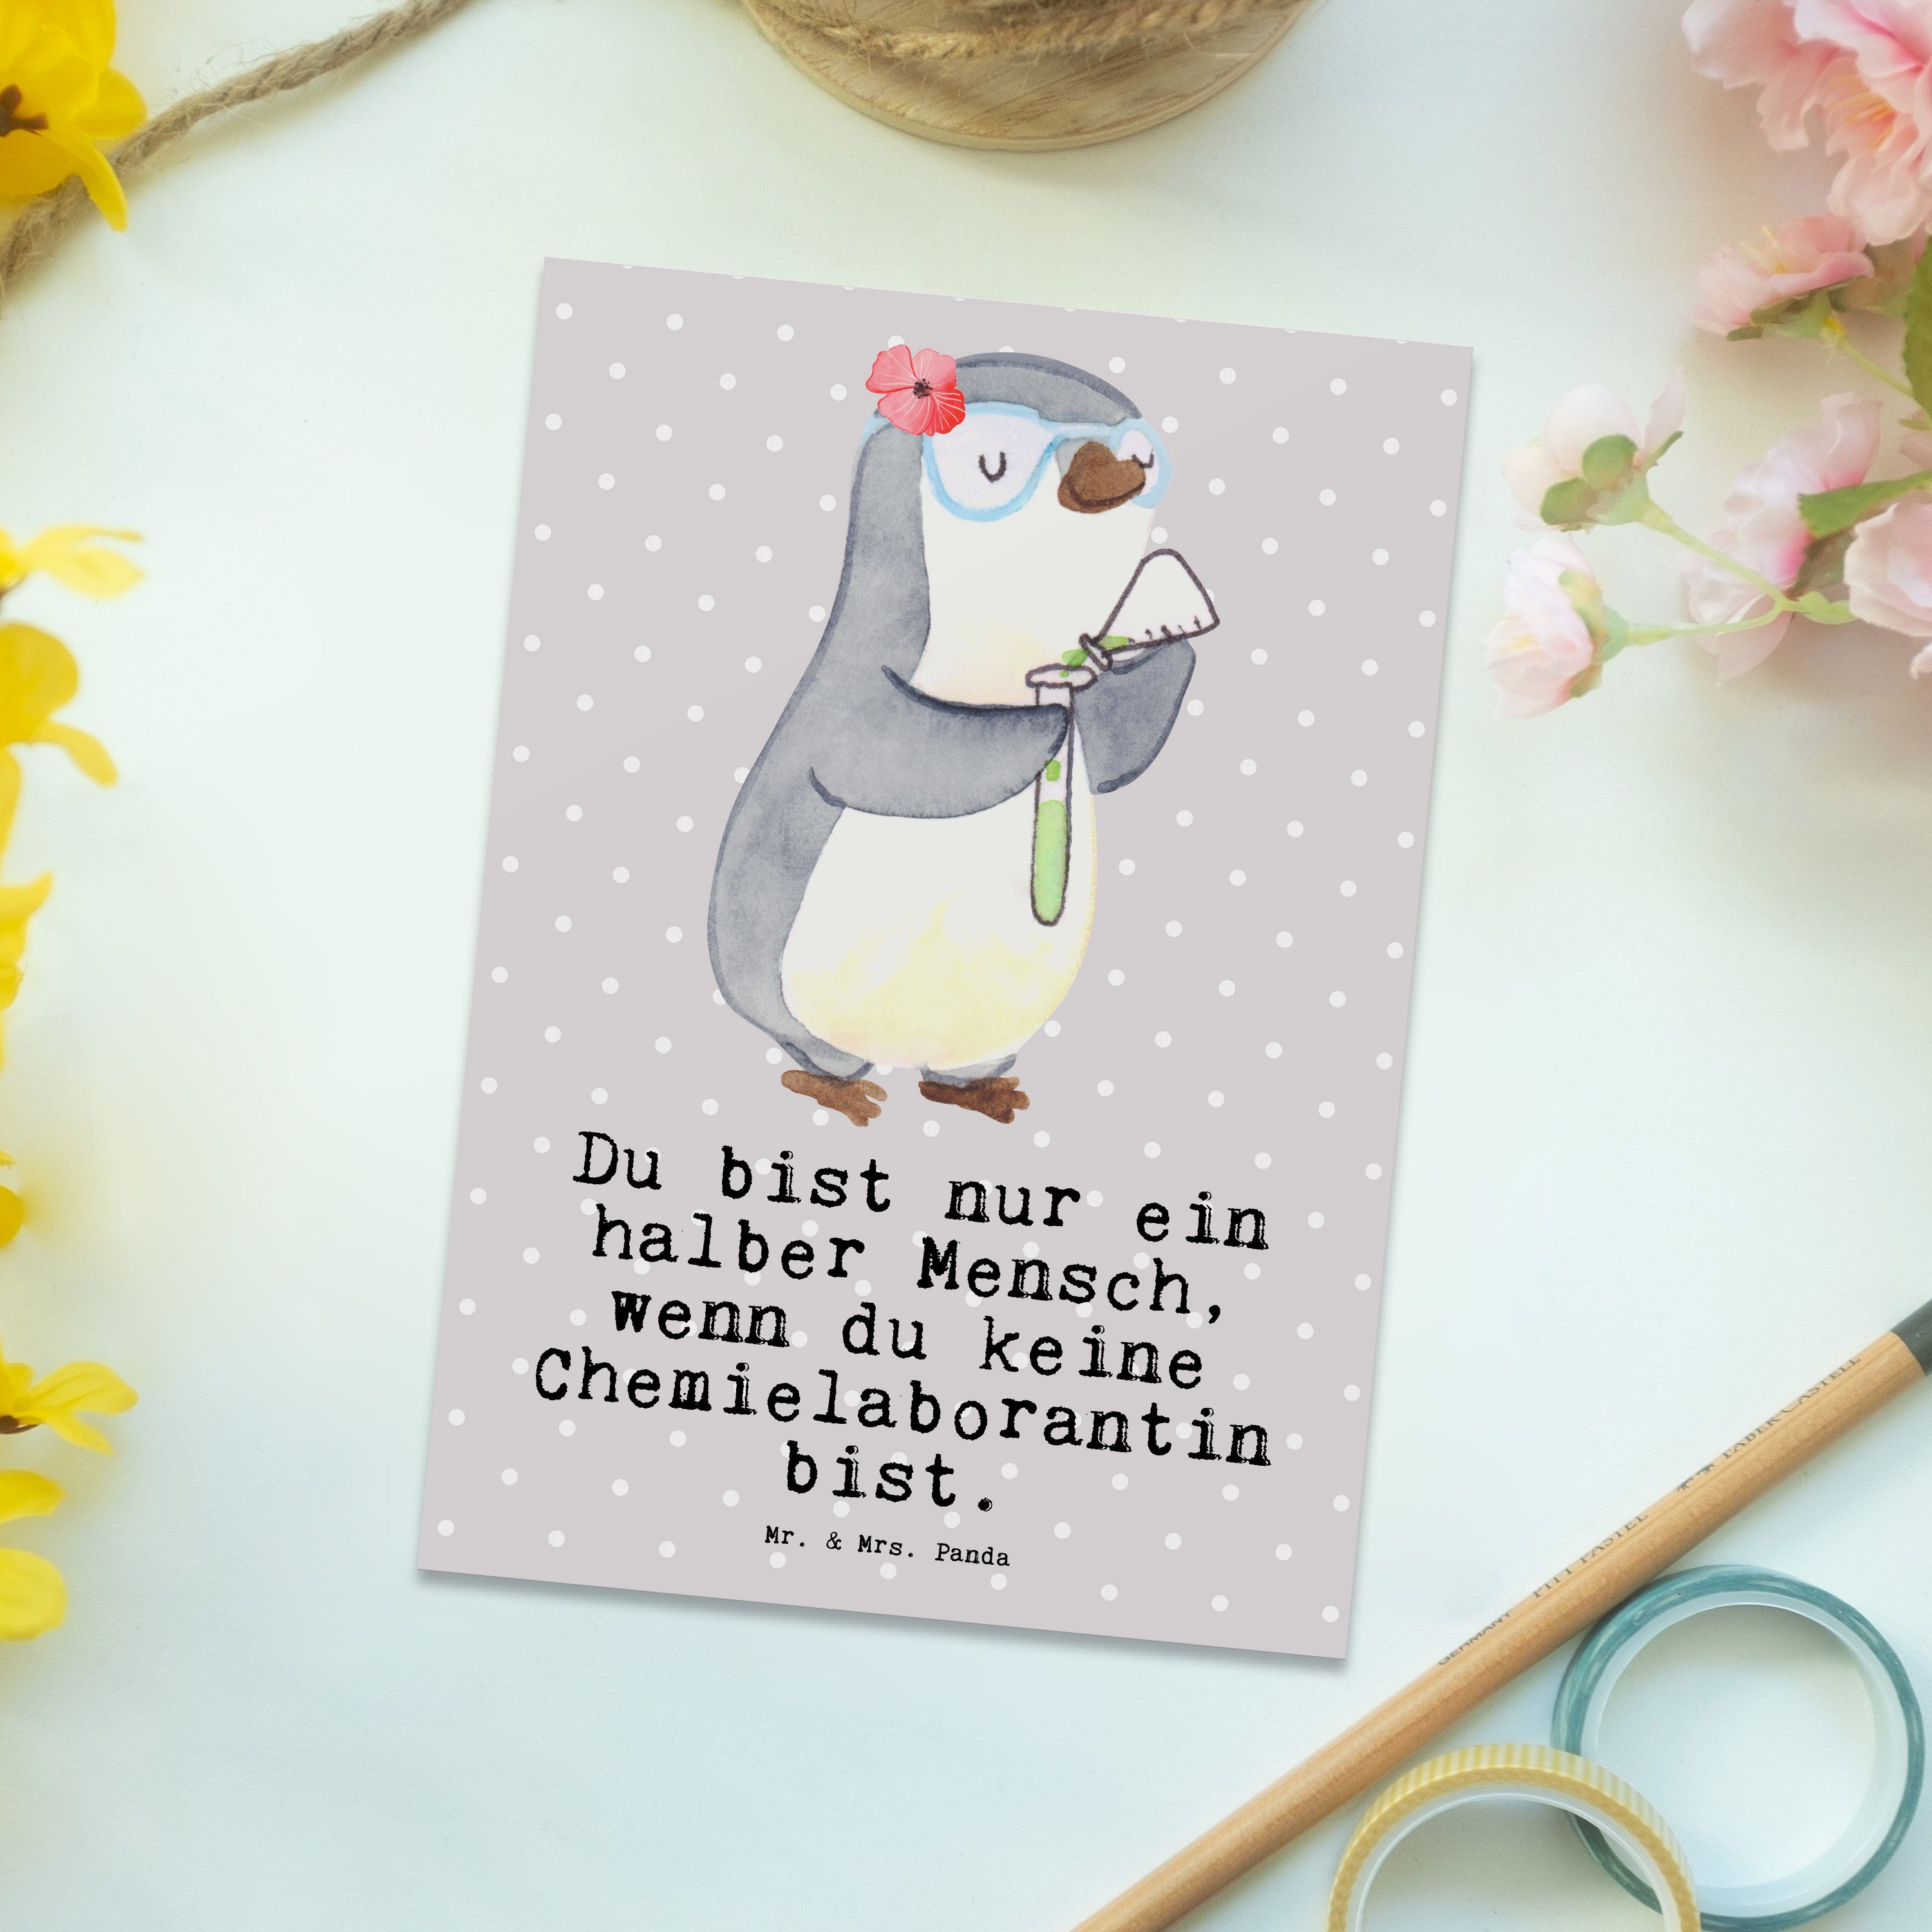 Mr. & Mrs. Grau Chemielaborantin Pastell Postkarte Panda Herz mit Chemieunterricht Geschenk, - 